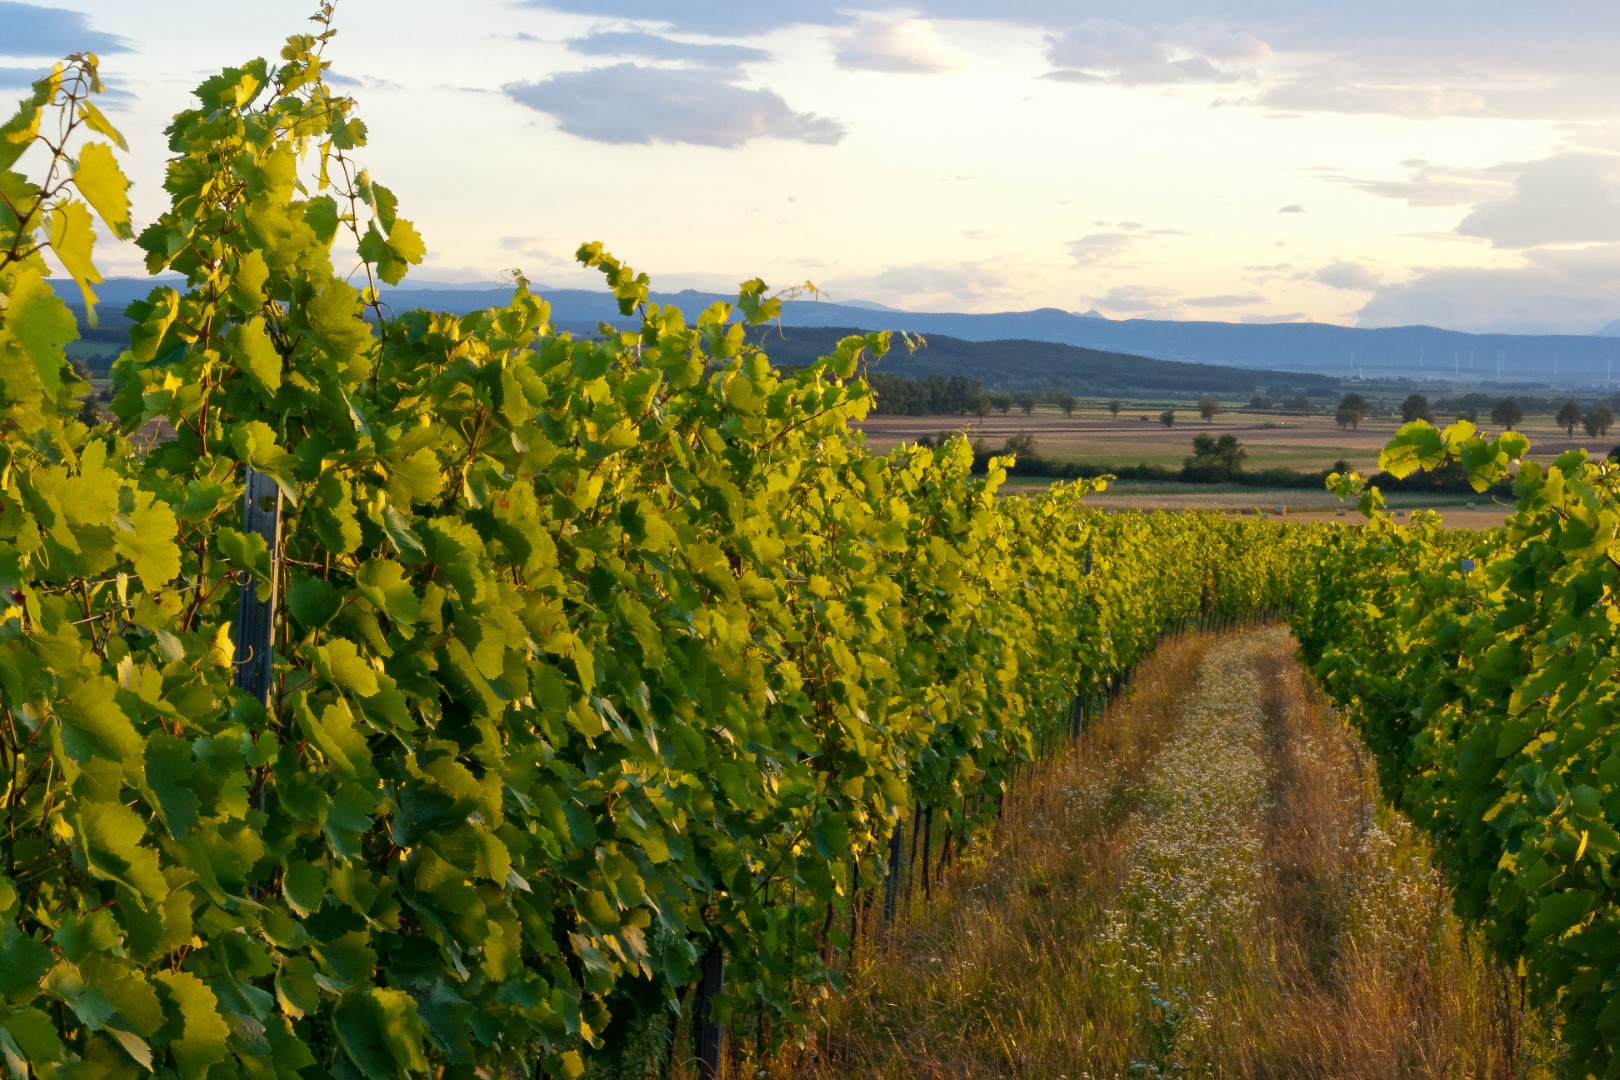 Blick auf grüne Weinreben im Weingut bei Sonnenuntergang mit sanften Hügeln im Hintergrund.